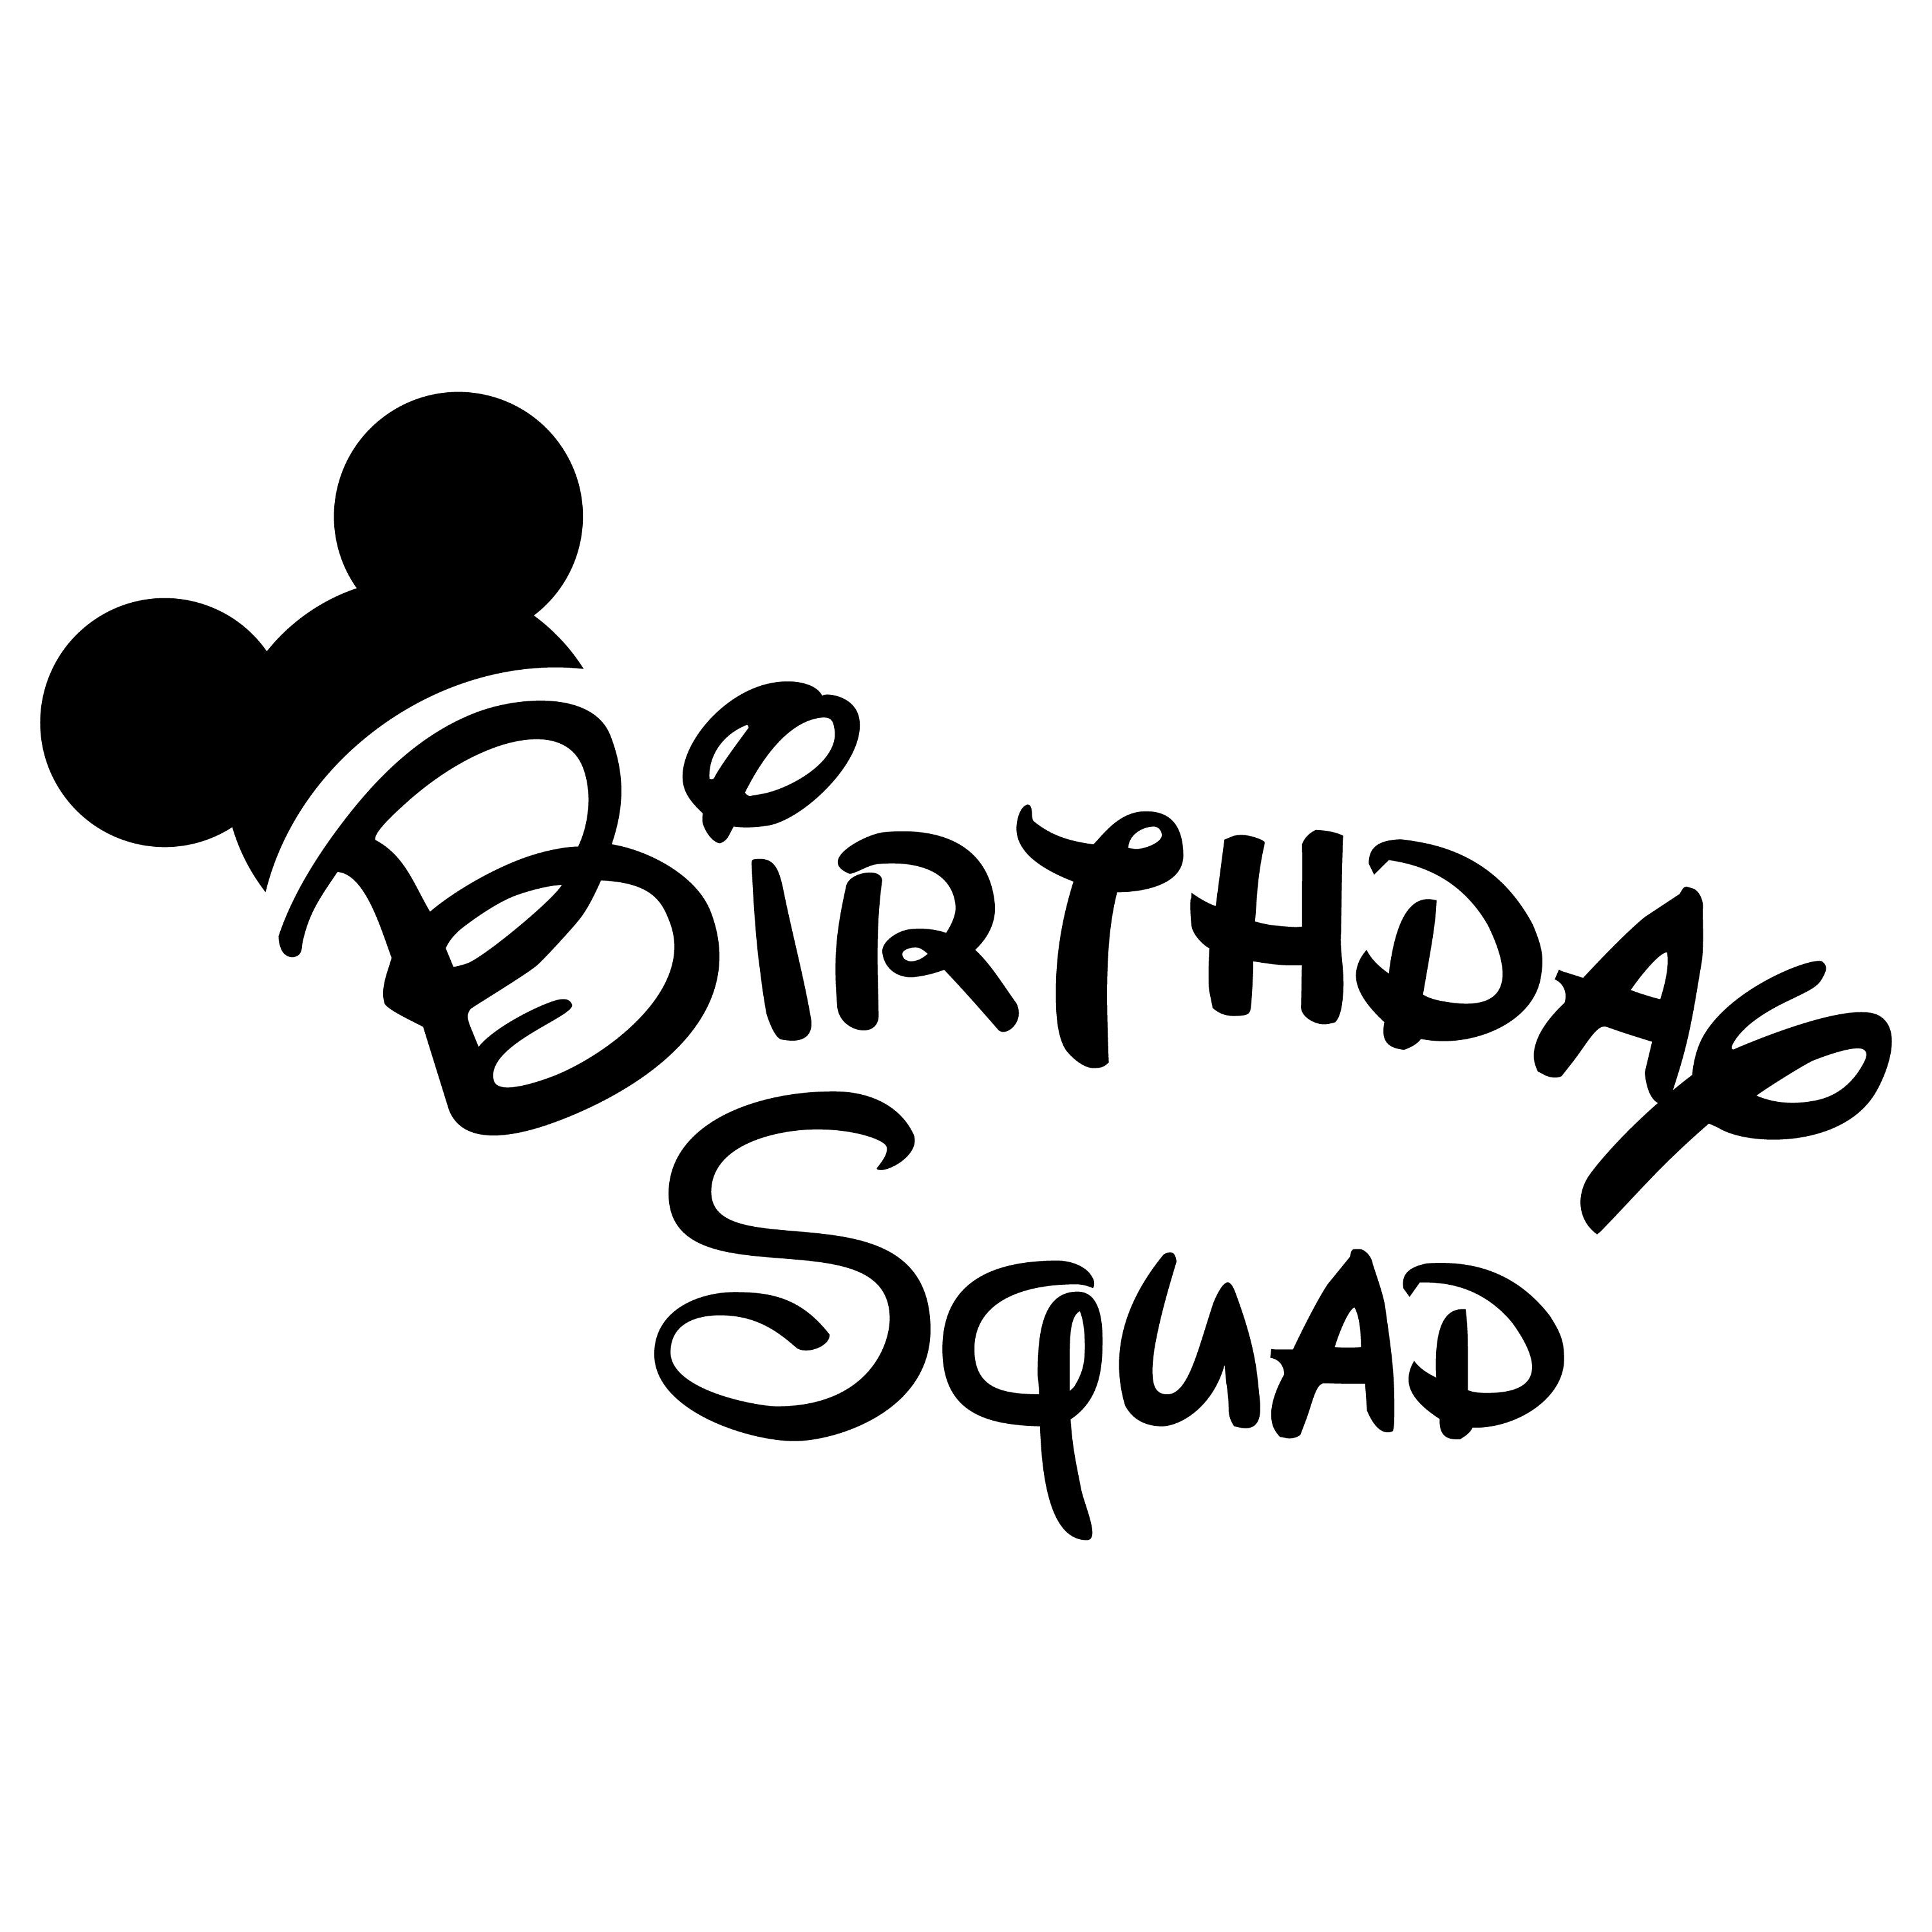 Disney Birthday Squad svg Disney Birthday SVG Disney trip | Etsy